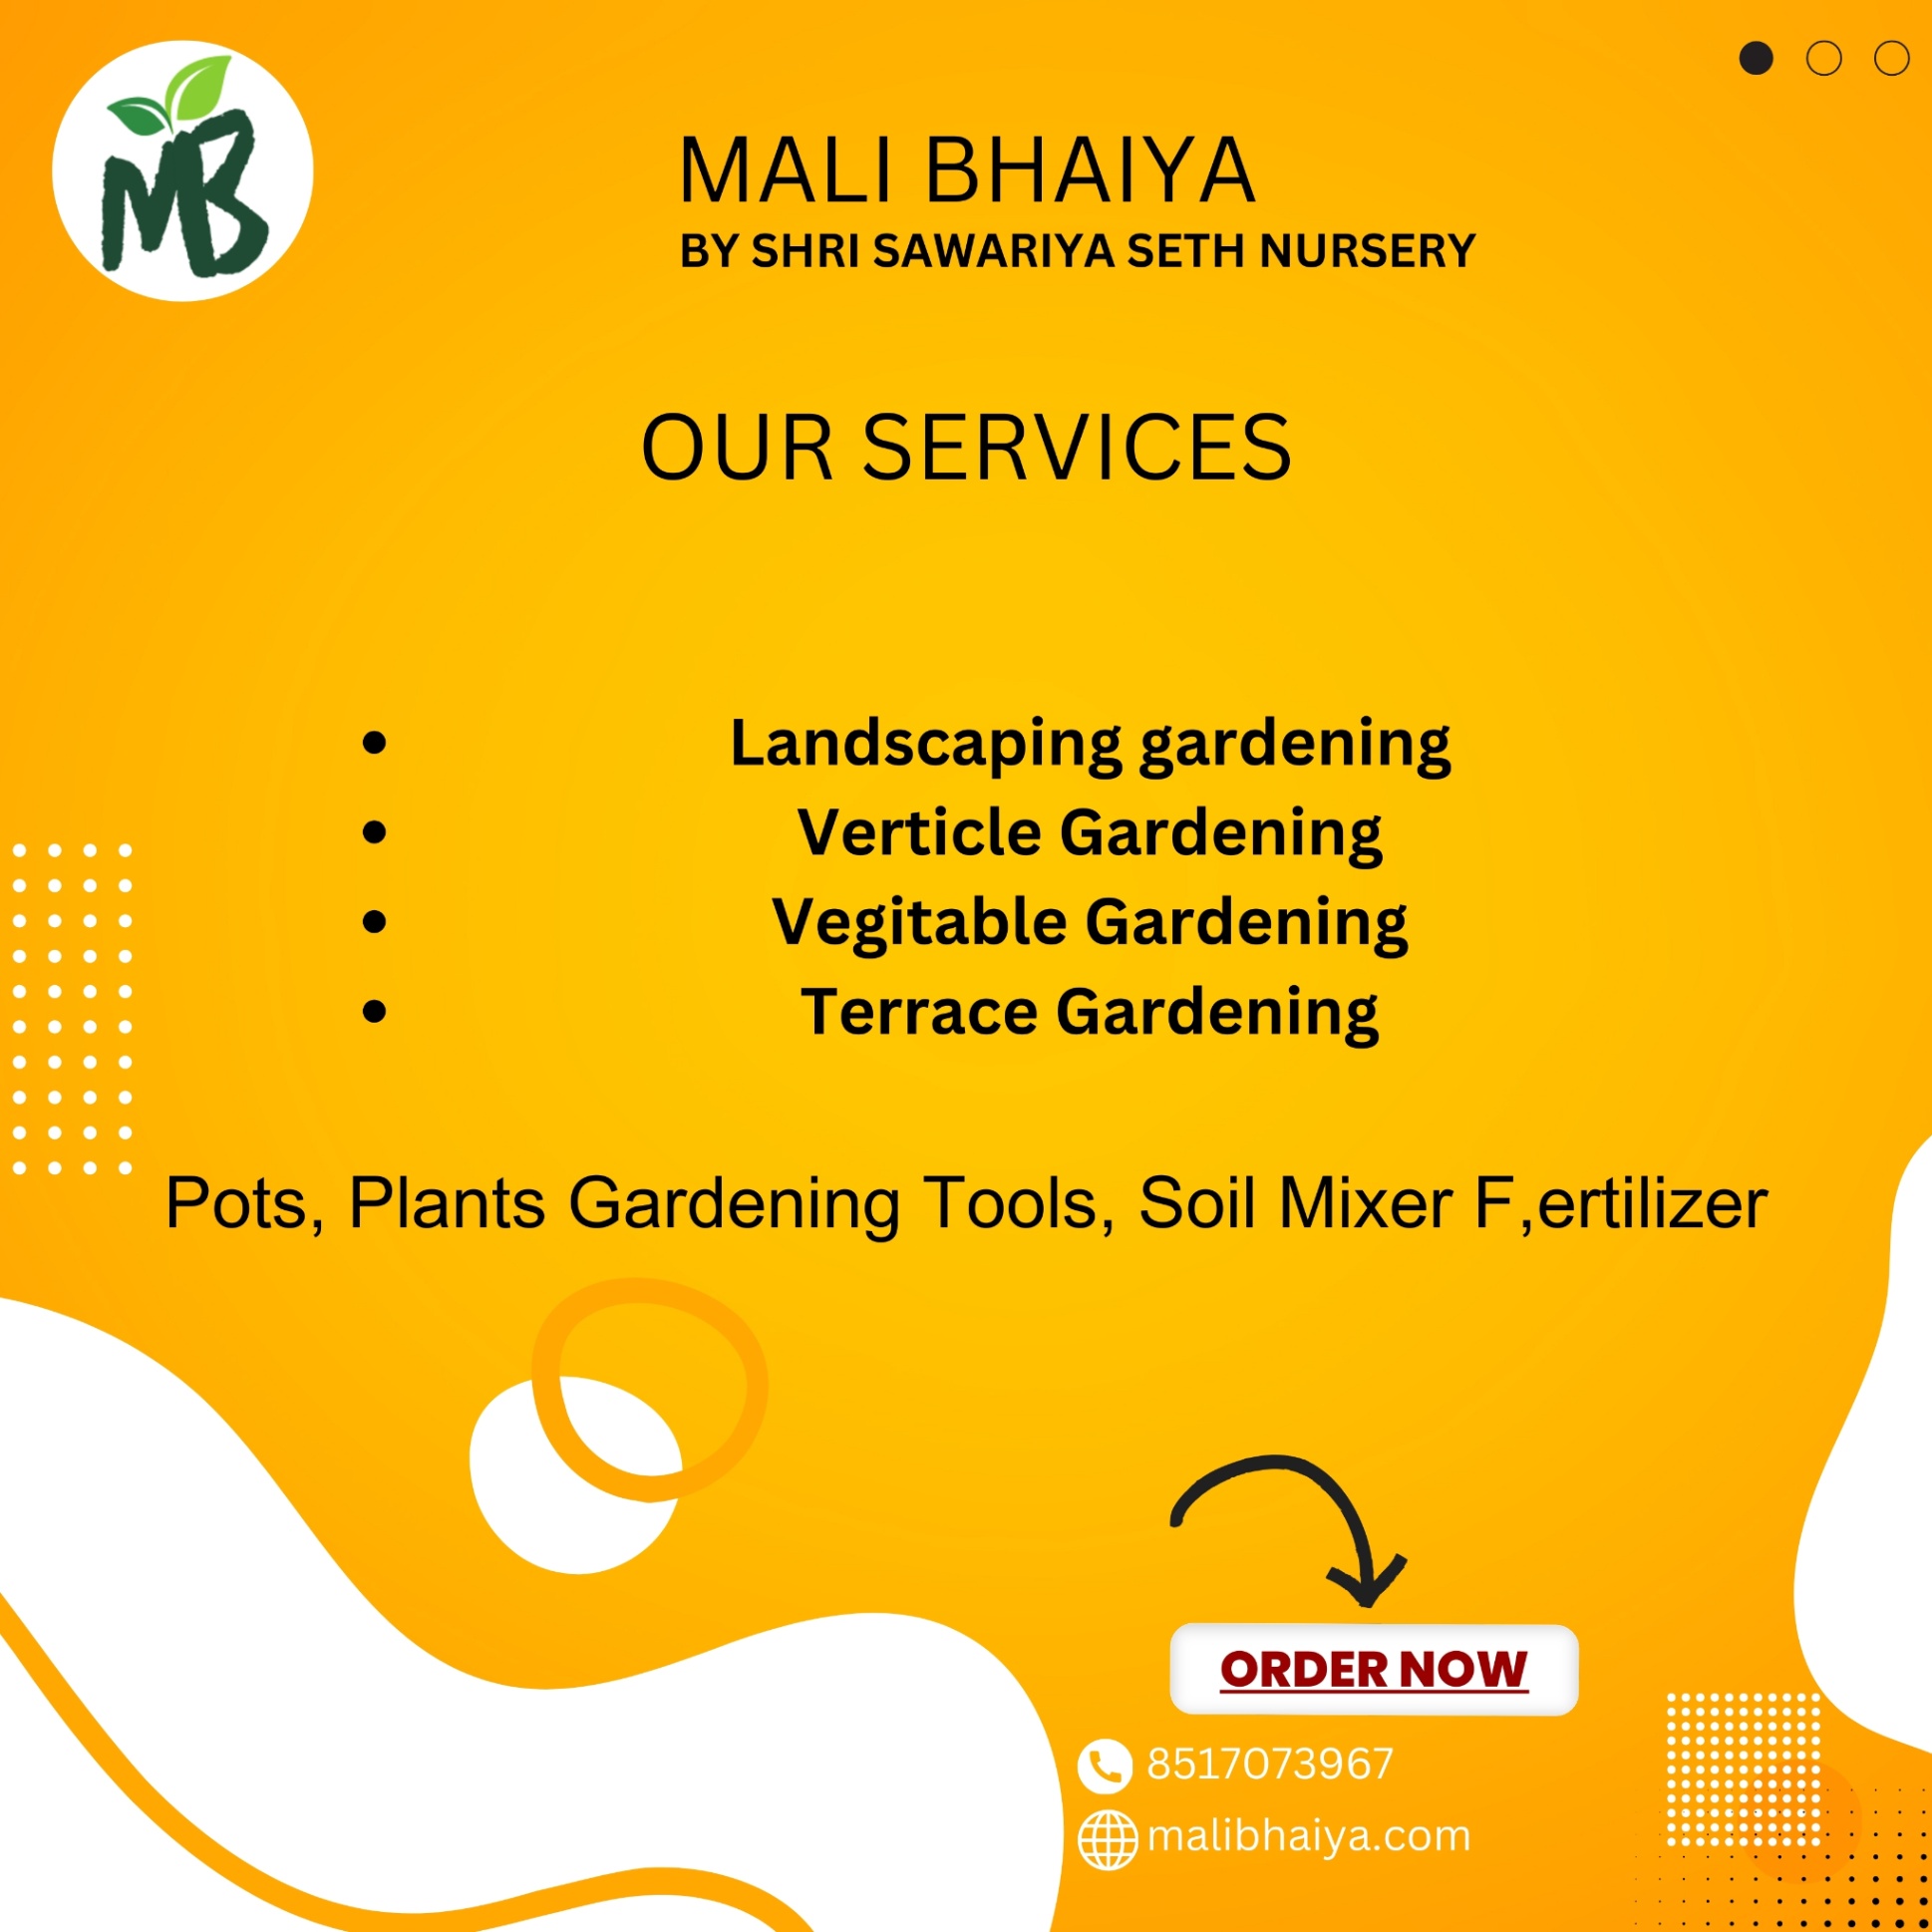 Mali Bhaiya's Professional Gardening Service in Bhopal